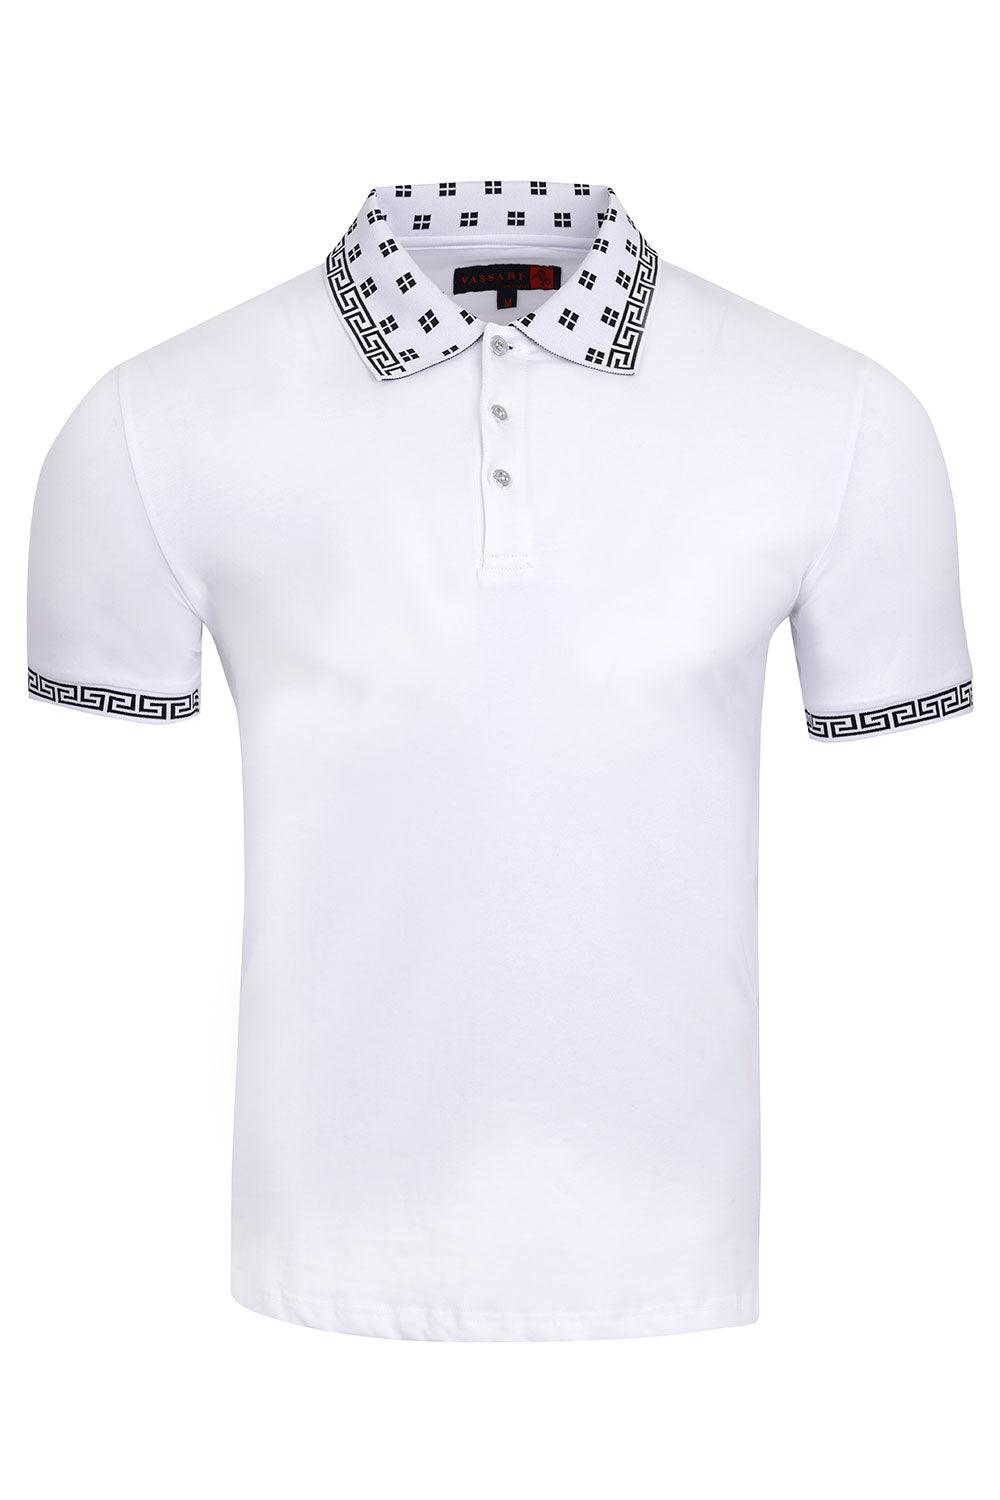 Vassari Men's Greek Key Checkered Stretch Polo Shirts 3VP632 White